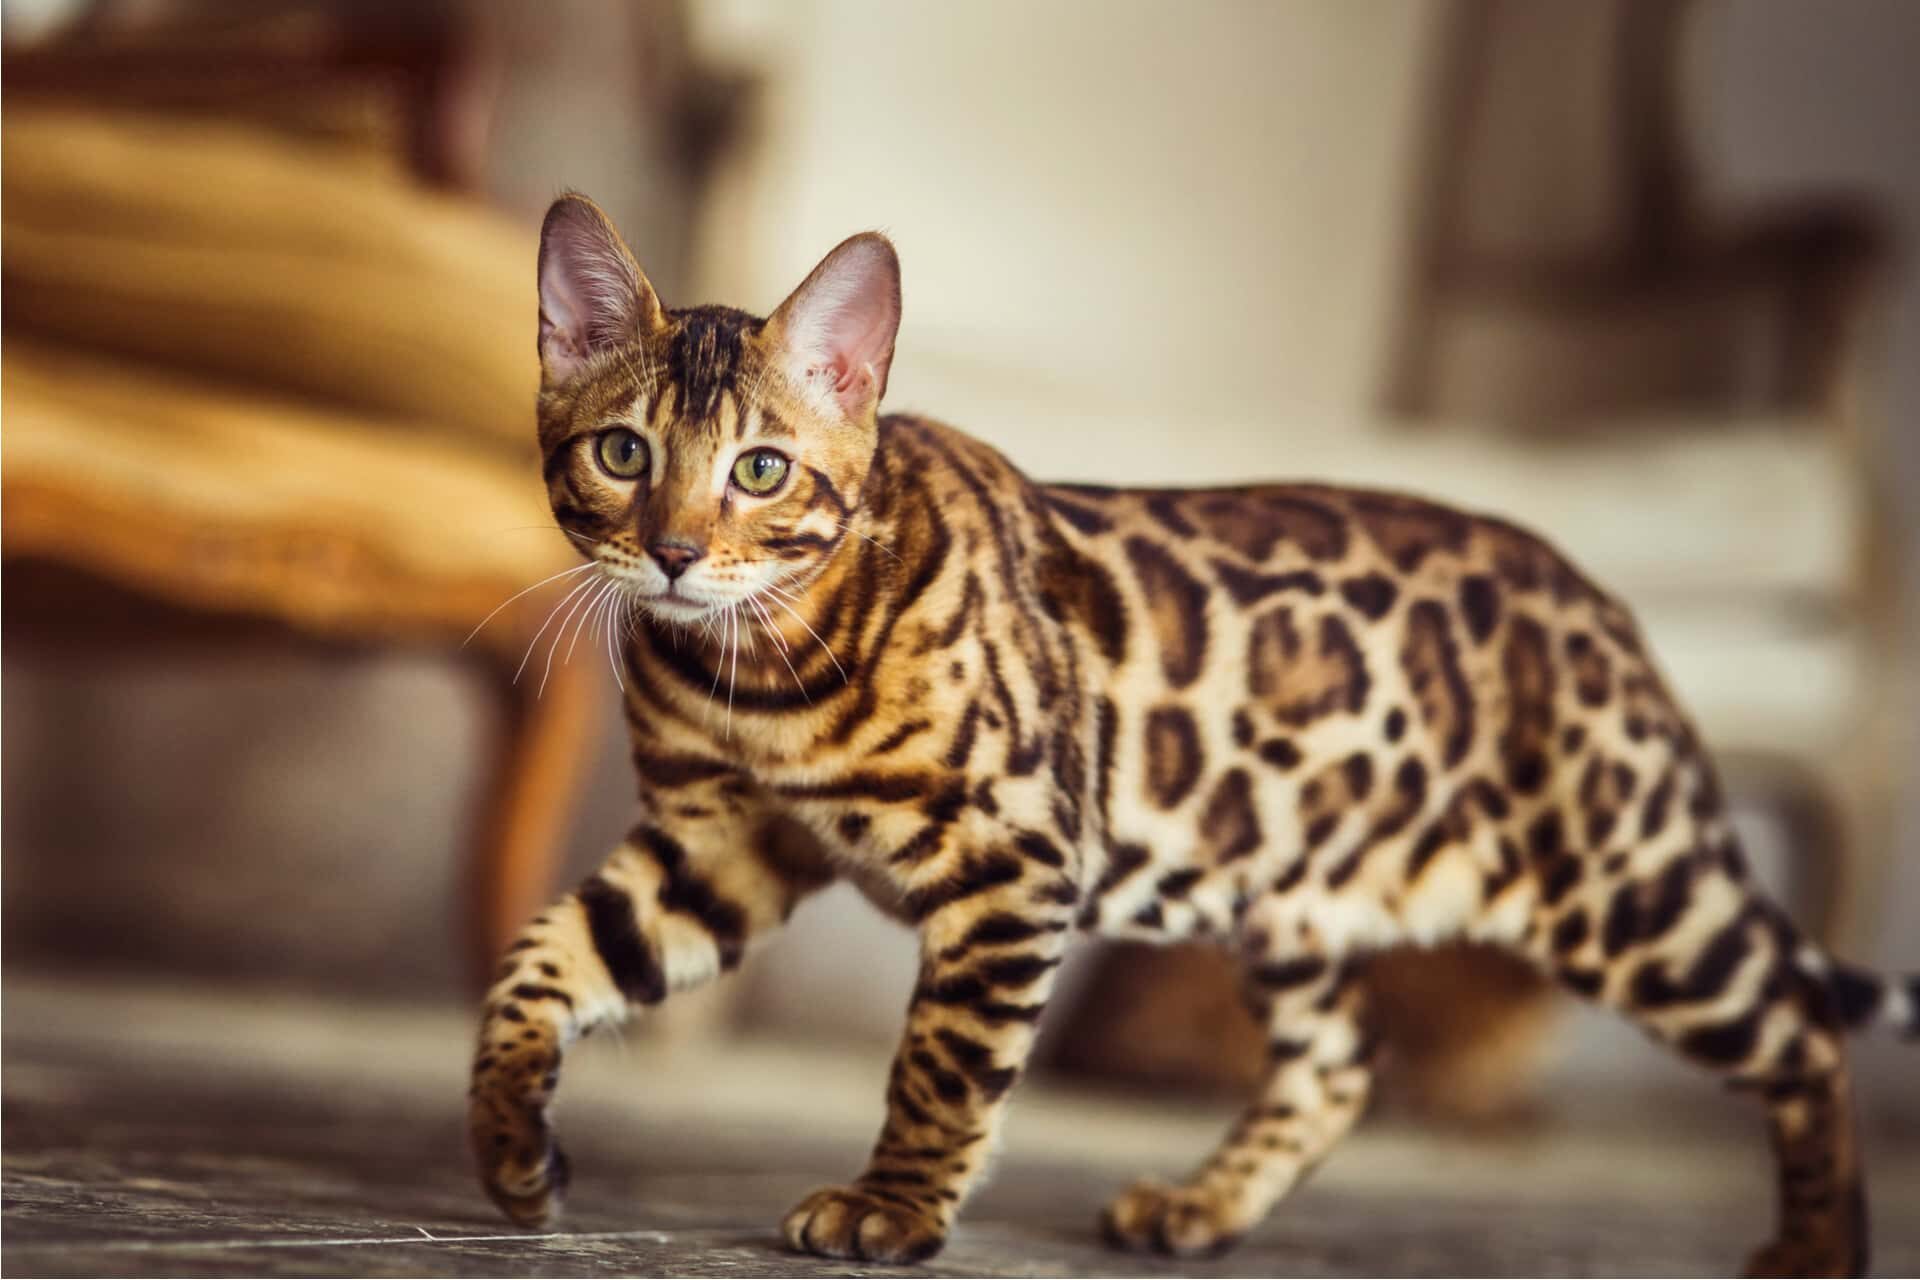 Окрасы бенгальских кошек, фотографии, описание стандартов окраса